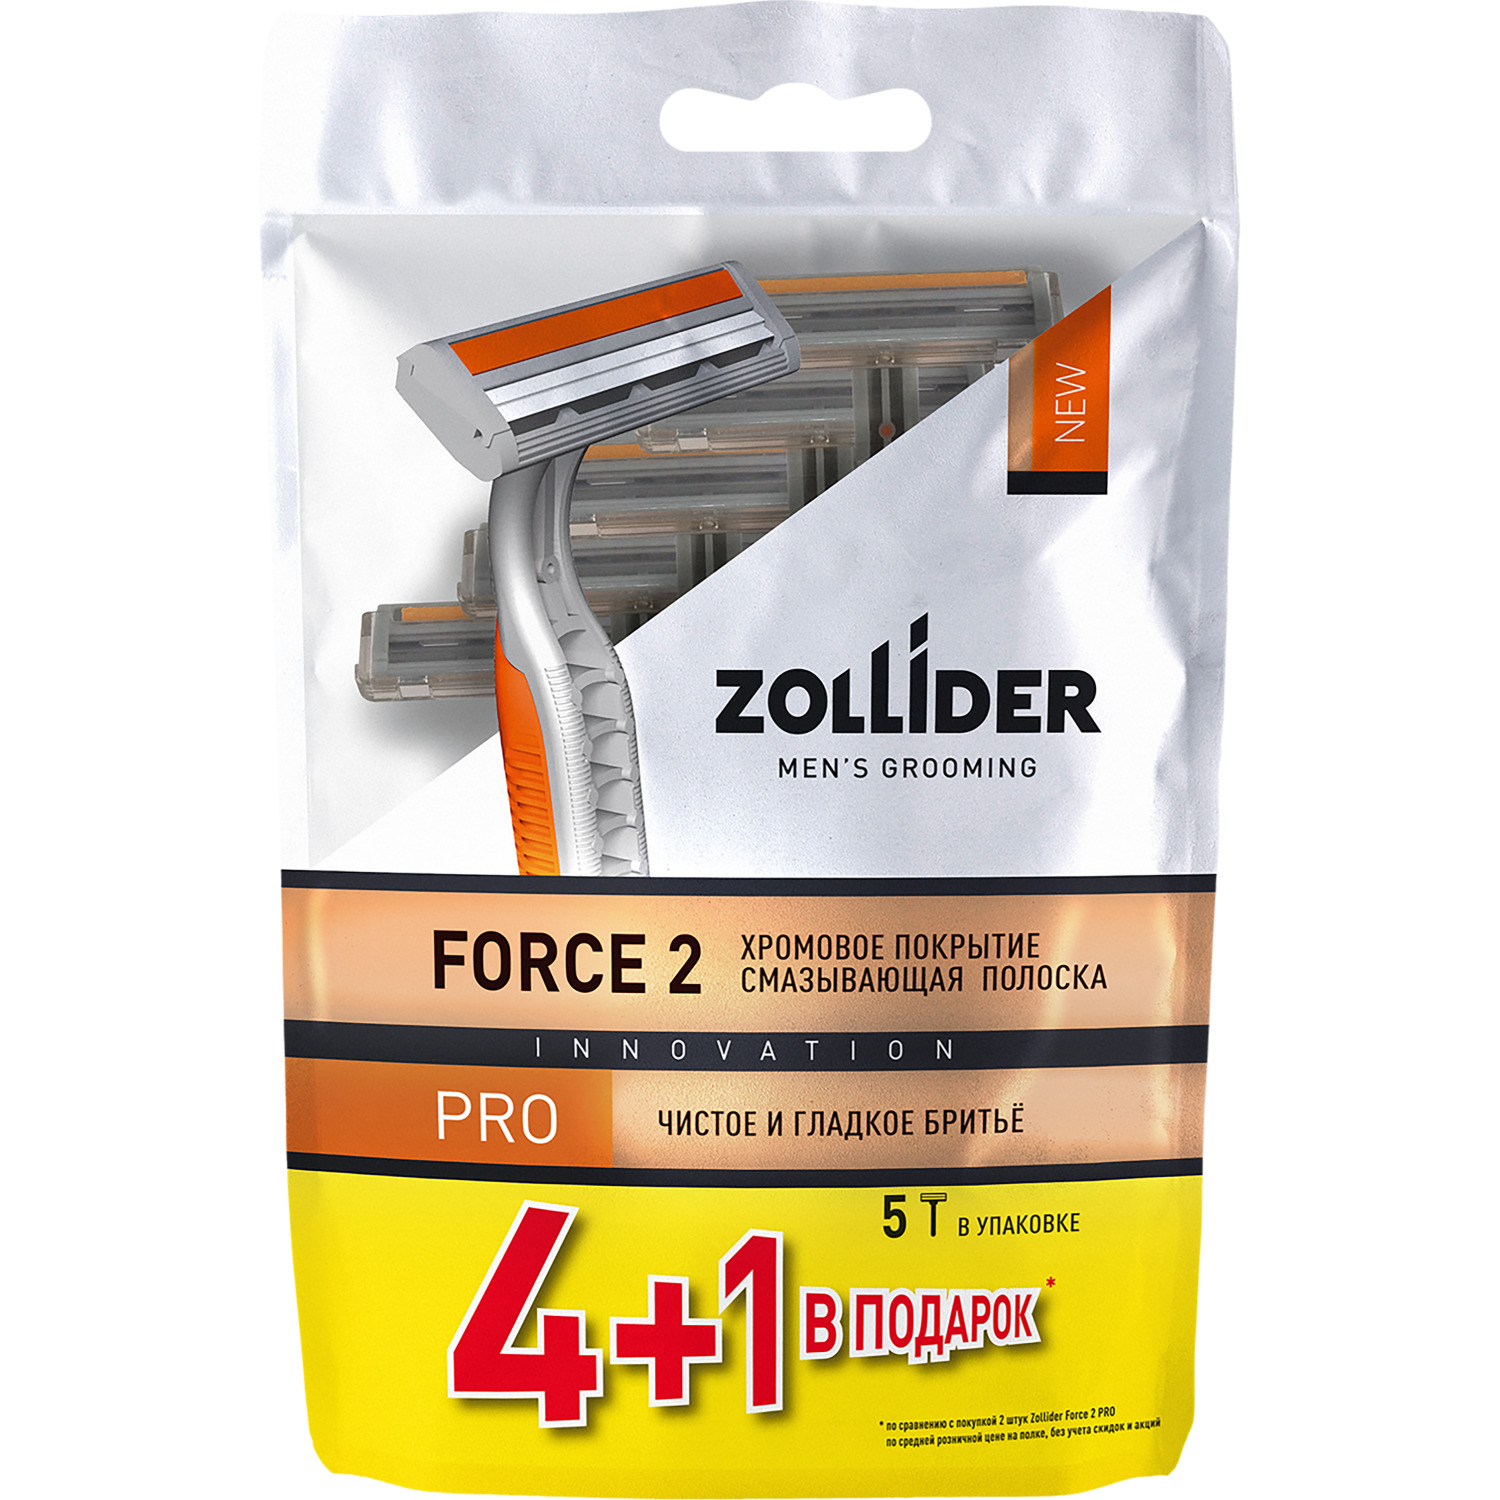 Одноразовые бритвенные станки Zollider Force 2 PRO 2 лезвия 4+1 шт vox станки для бритья eco 3 лезвия 4 0